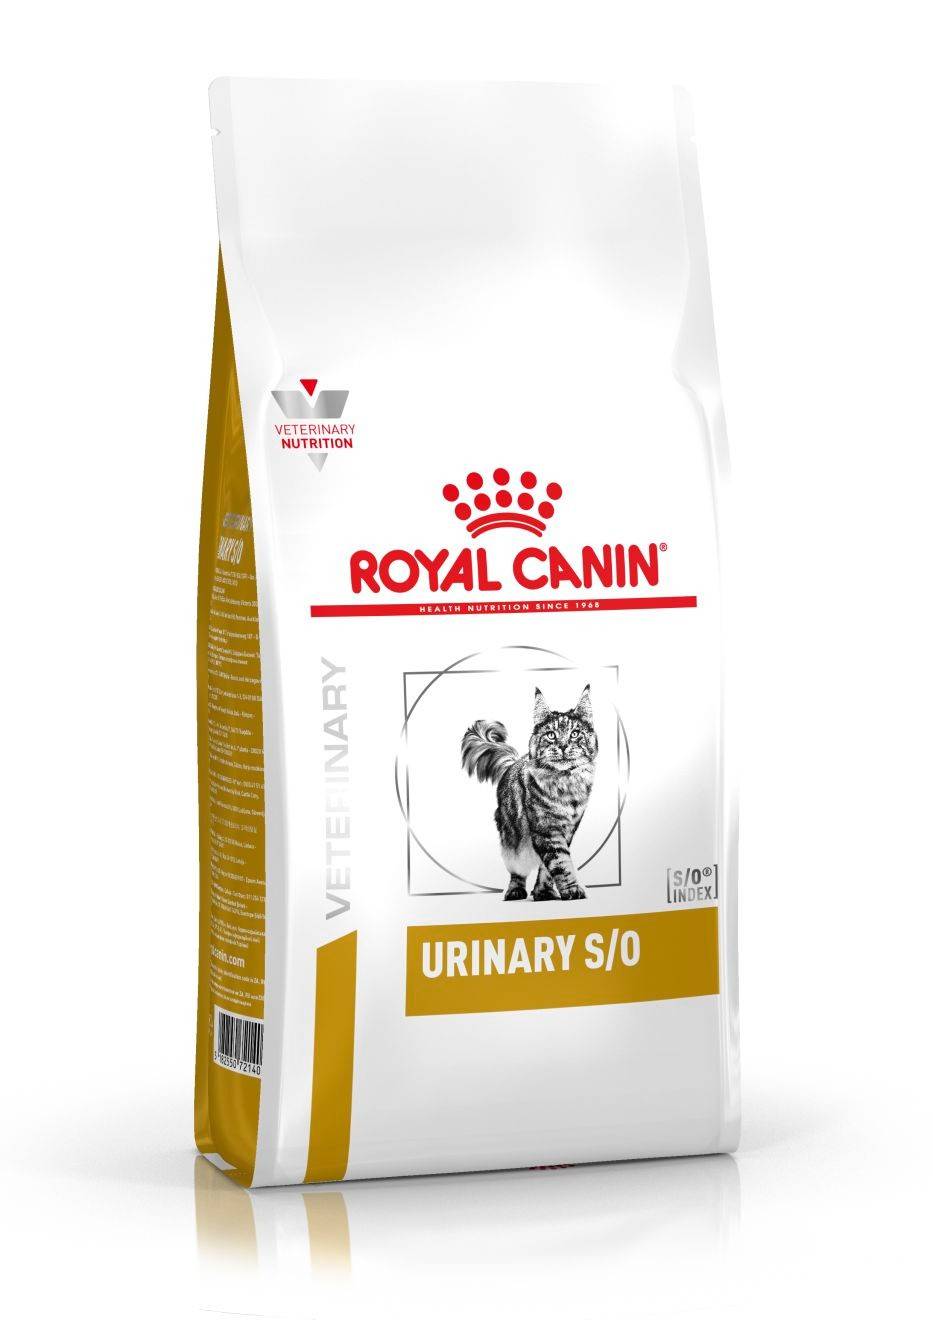 ROYAL CANIN URINARY S/0  FELINE – лечебный сухой корм для  взрослых котов при заболеваниях дистального отдела мочевыделительной системы